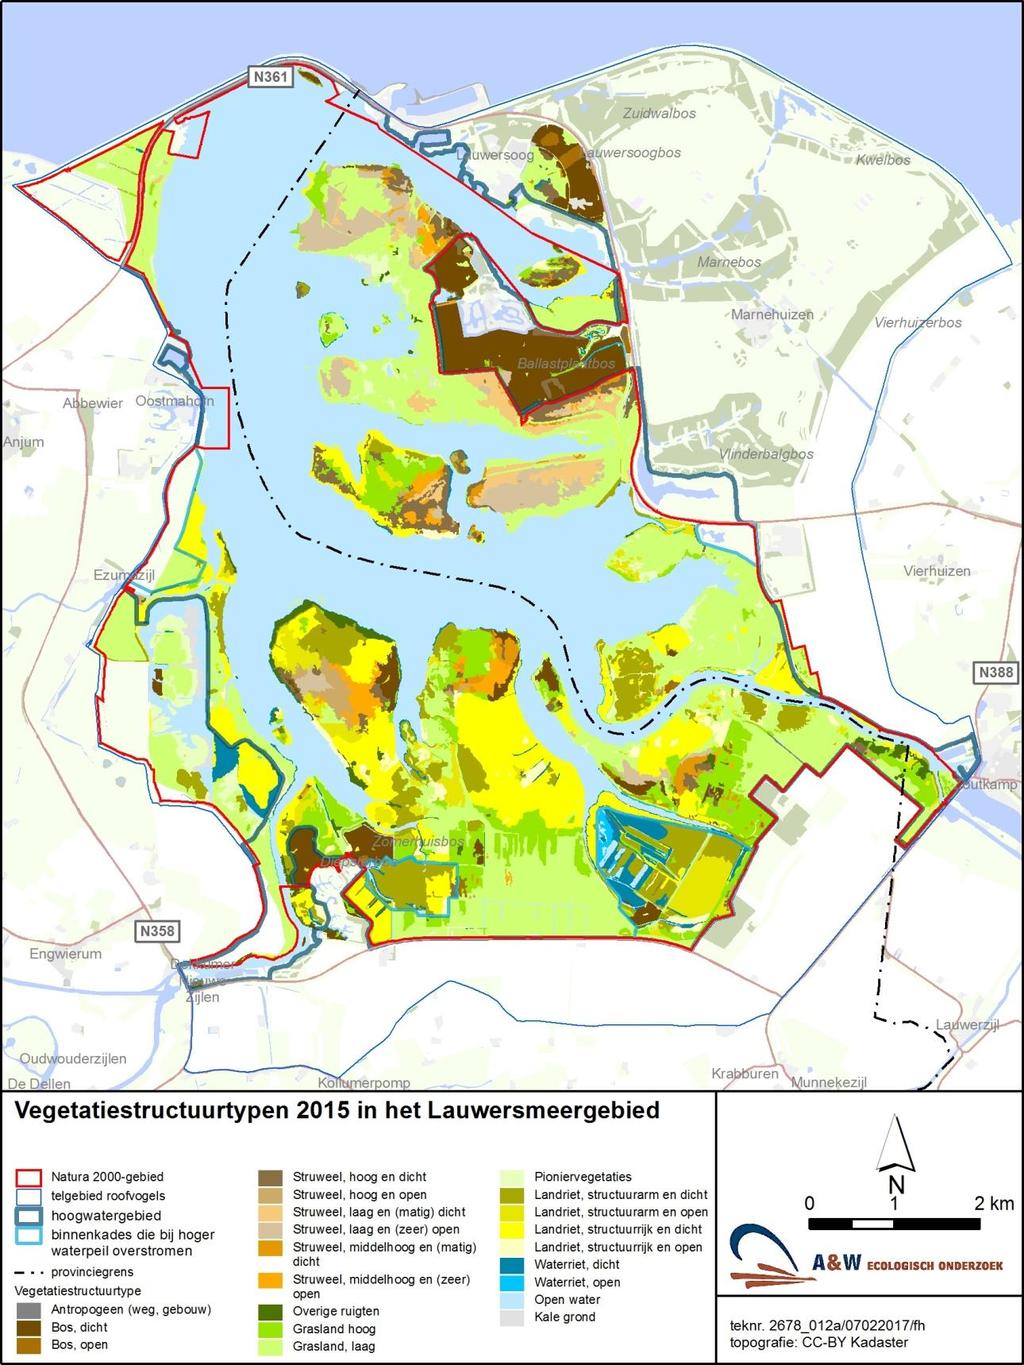 A&W-rapport 2288 Monitoring van effecten van bodemdaling op muizen en muizenetende roofvogels in het Lauwersmeer 11 Figuur 2.